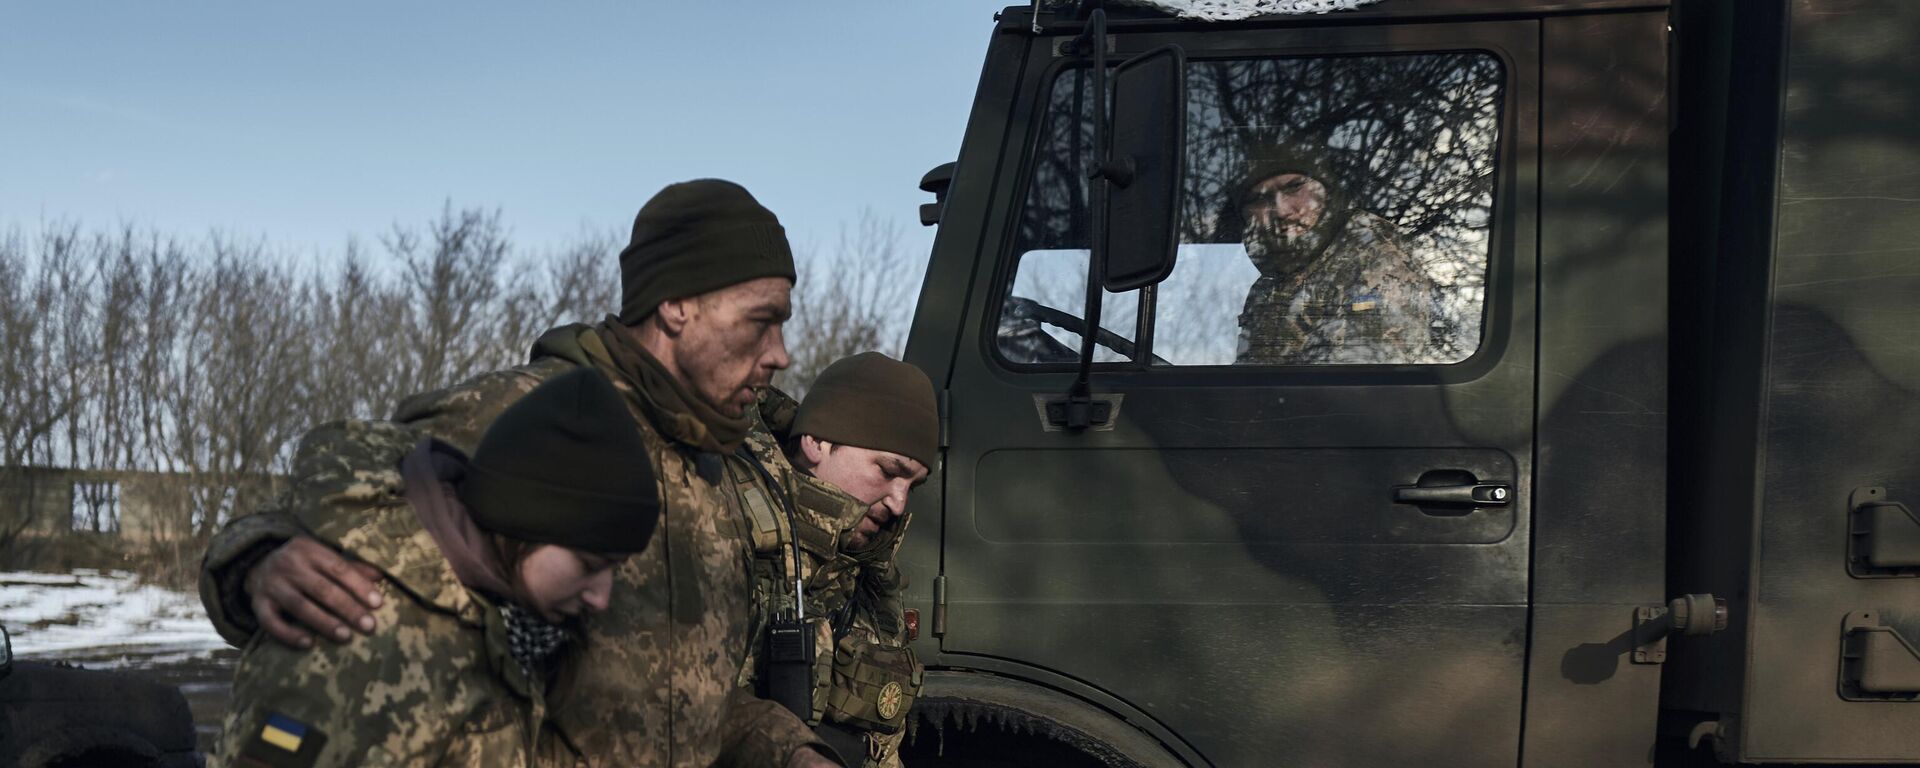 Médicos militares ayudan a un soldado herido en combate a subir a un vehículo de evacuación cerca de Bájmut, en la región ucraniana de Donetsk, el 22 de febrero de 2023  - Sputnik Mundo, 1920, 05.12.2023